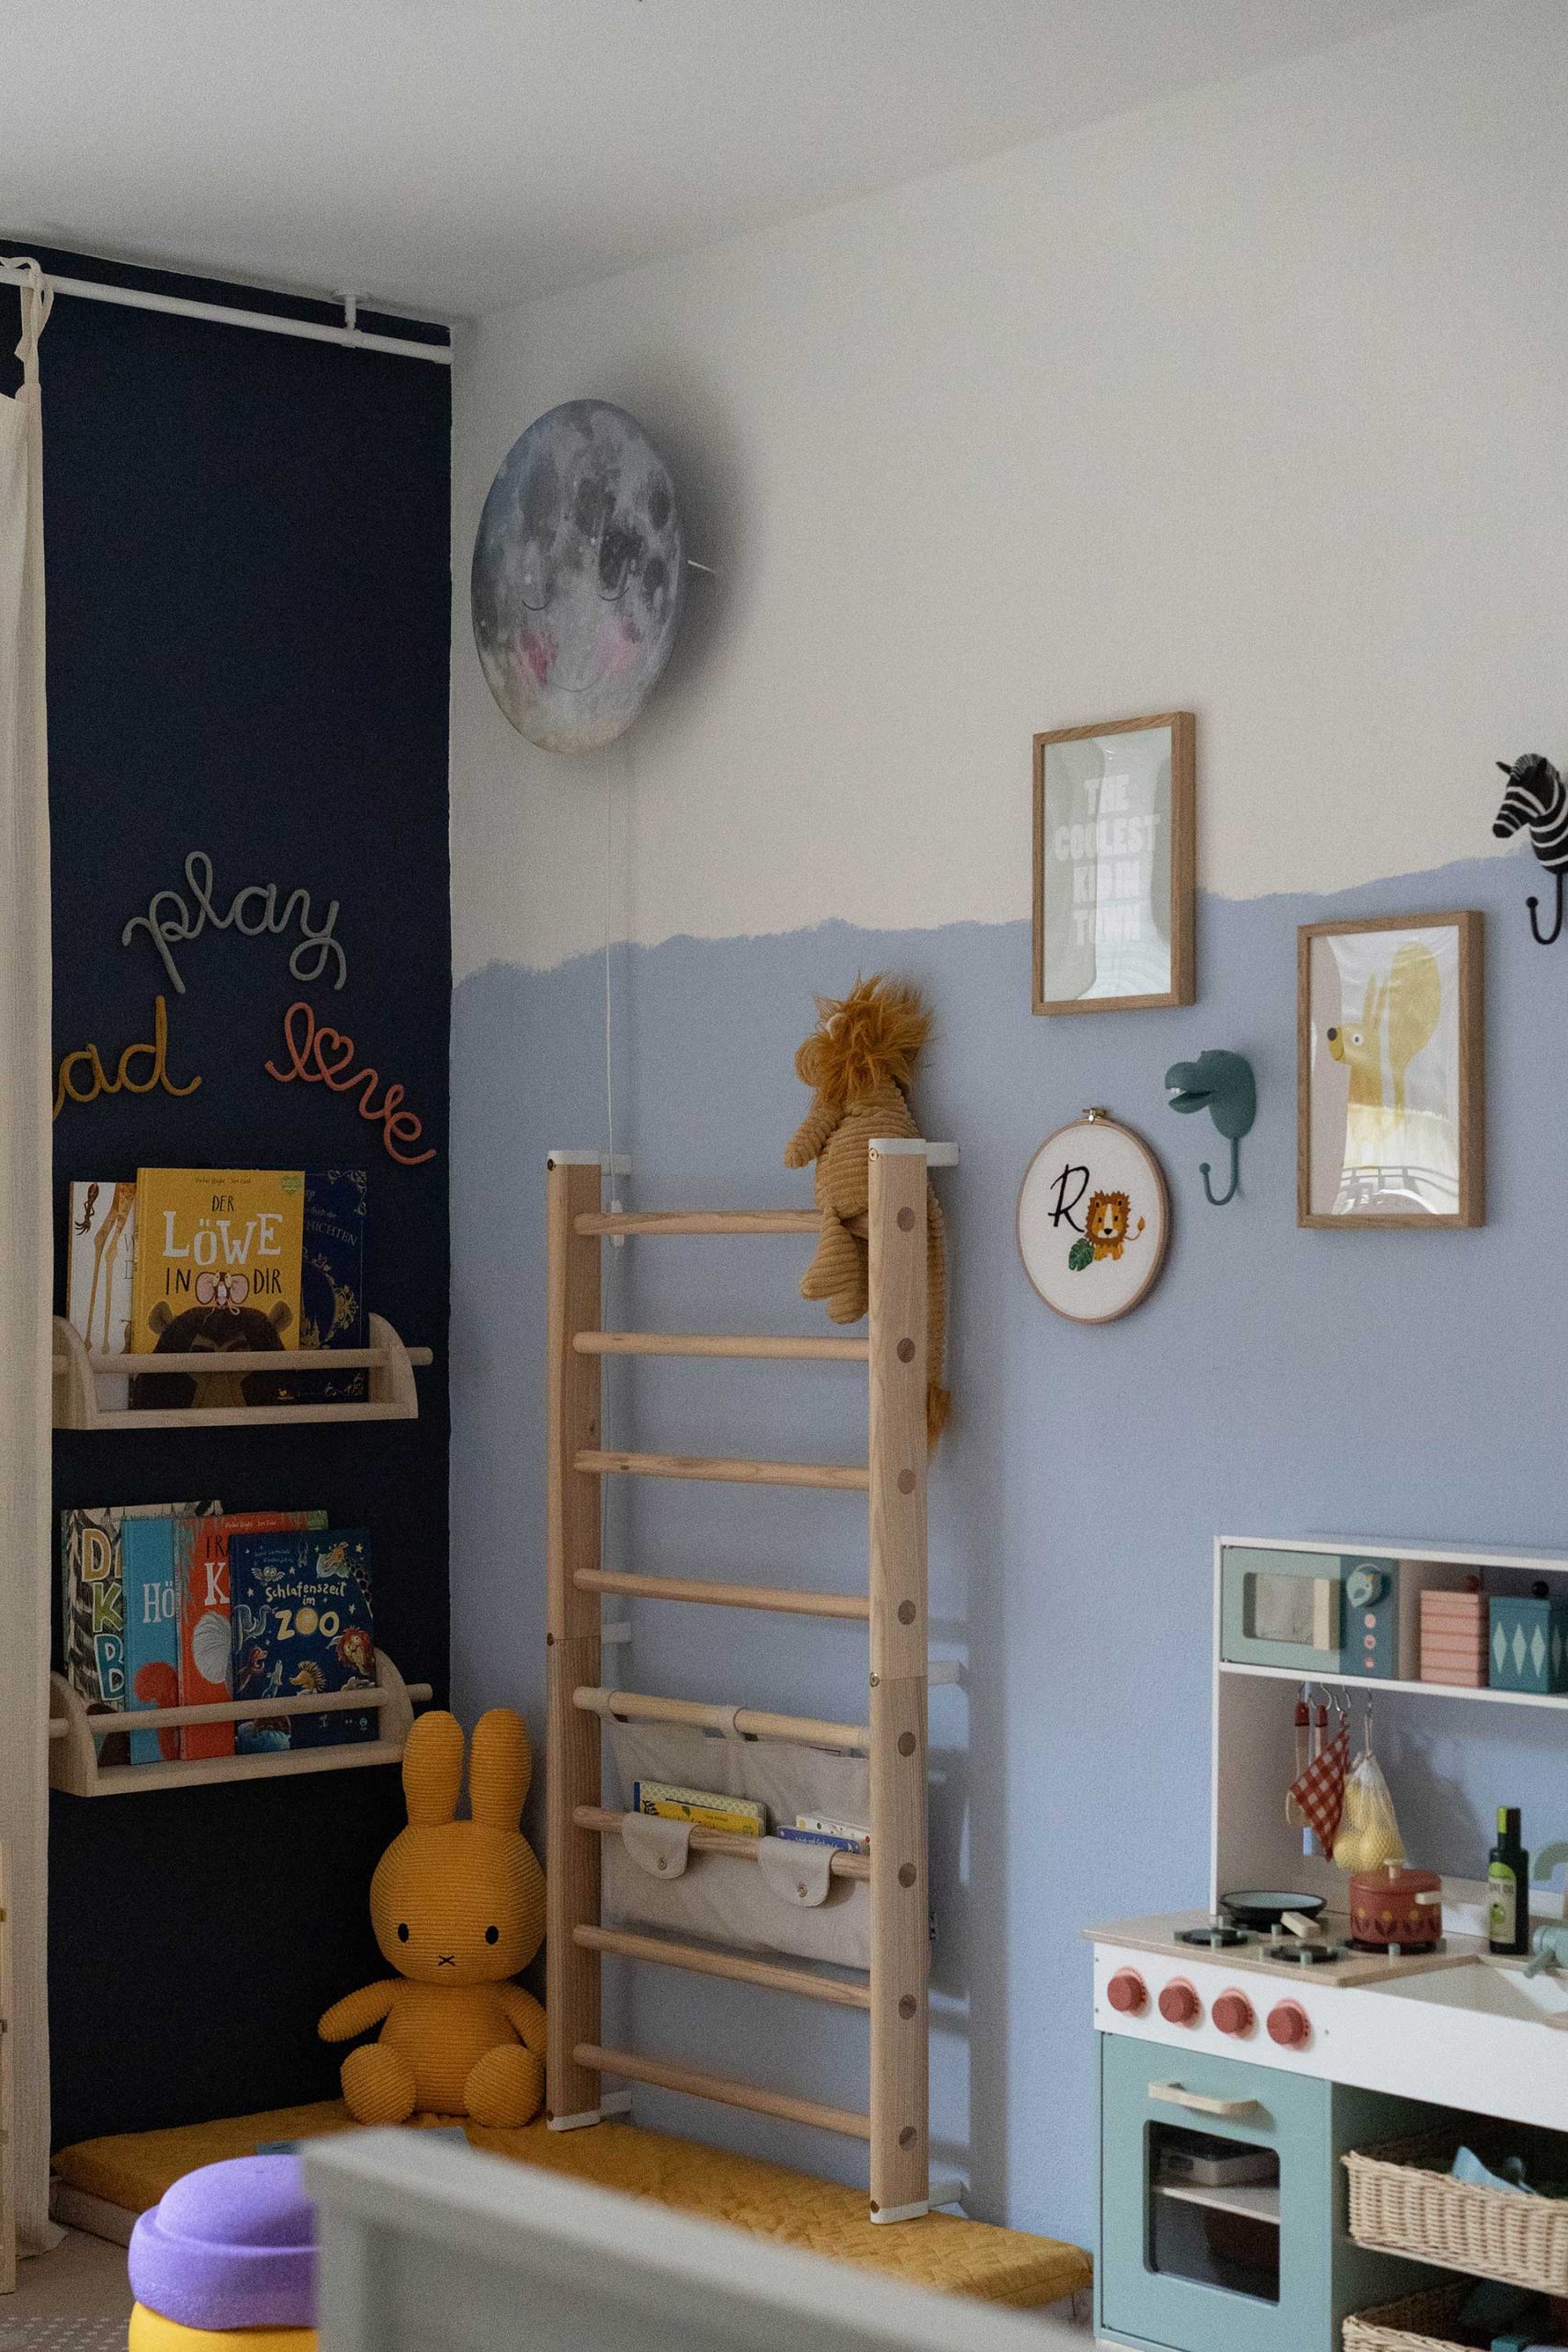 Ein Kinderzimmer gestalten kann eine echte Herausforderung sein. Meine Tipps für ein schönes Kleinkind-Zimmer gibt's am Mamablog www.whoismocca.com